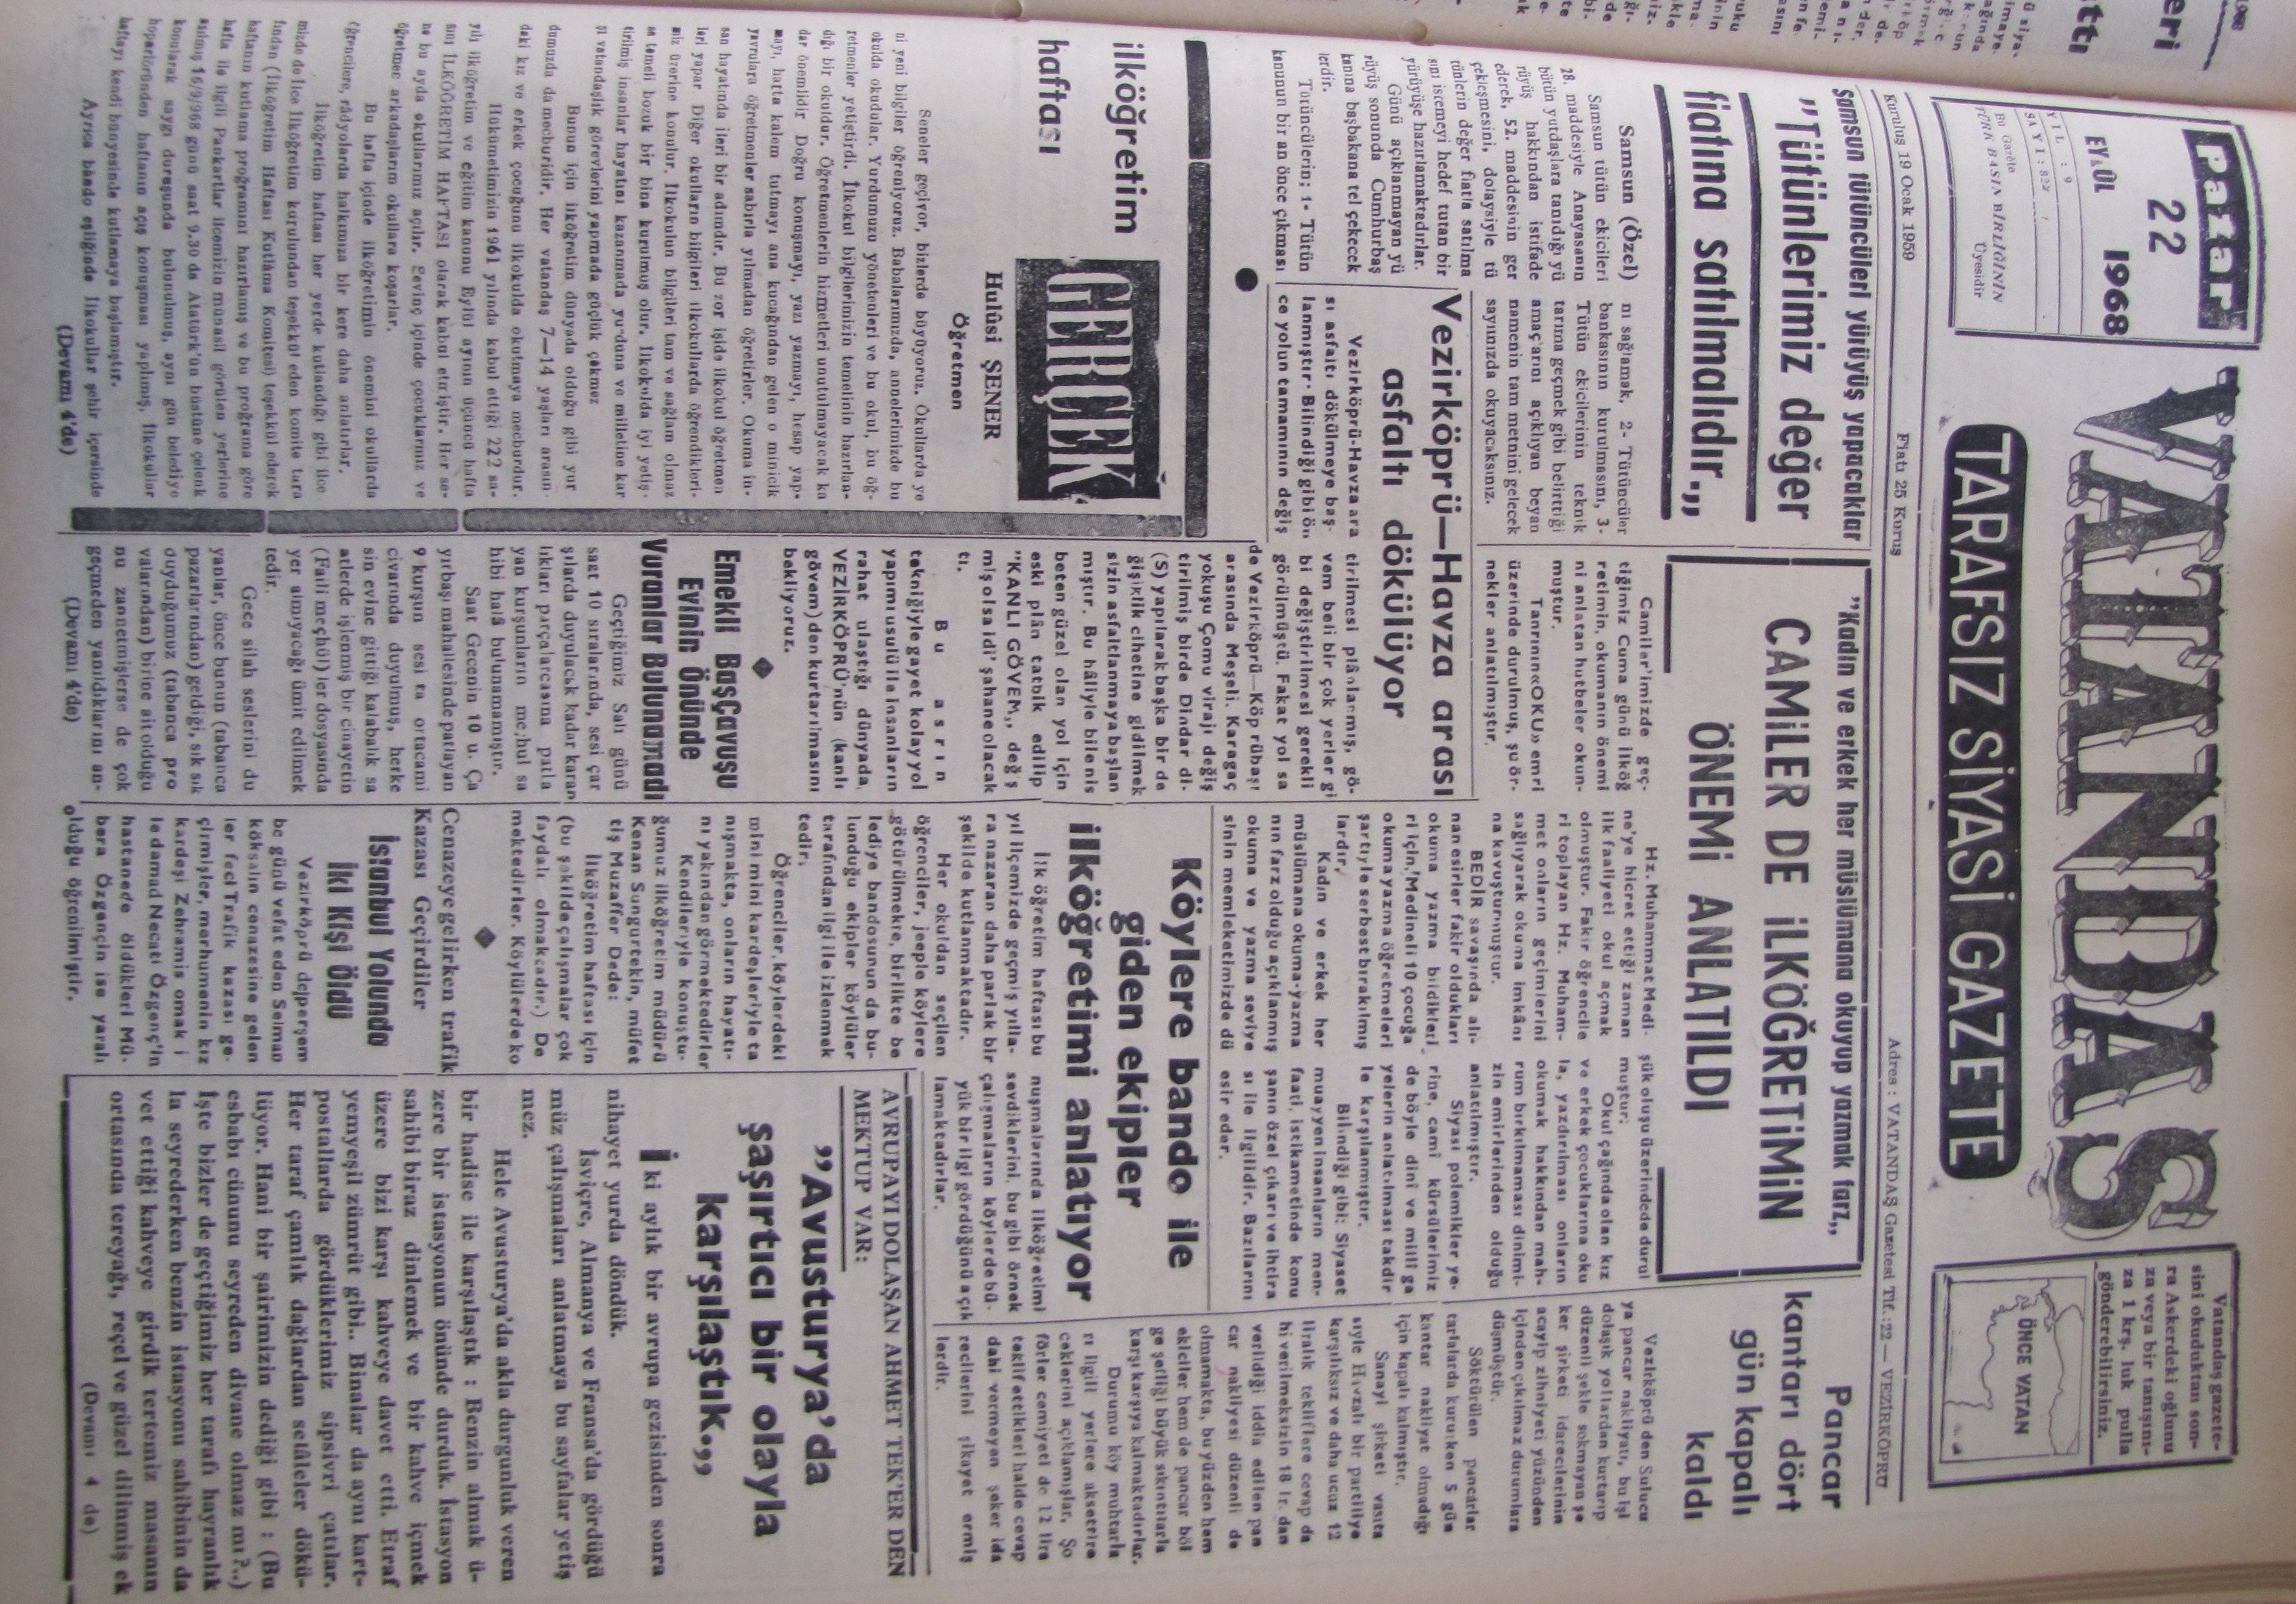 Samsun tütüncüleri yürüyüş yapacaklar “Tütünlerimiz değer fiyatına satılmalıdır” 22 Eylül 1968 Pazar